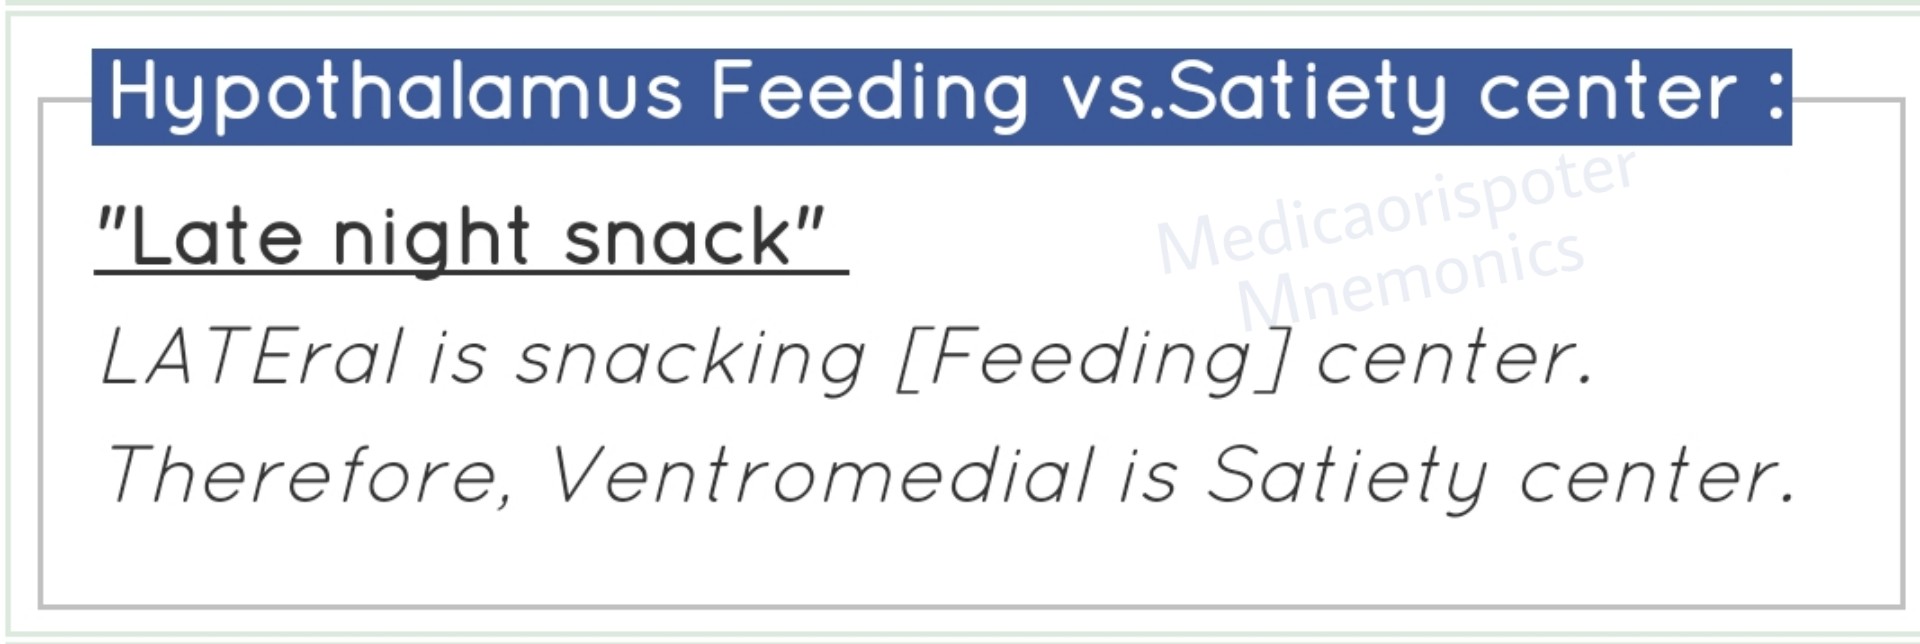 Feeding vs Satiety Center of Hypothalamusla